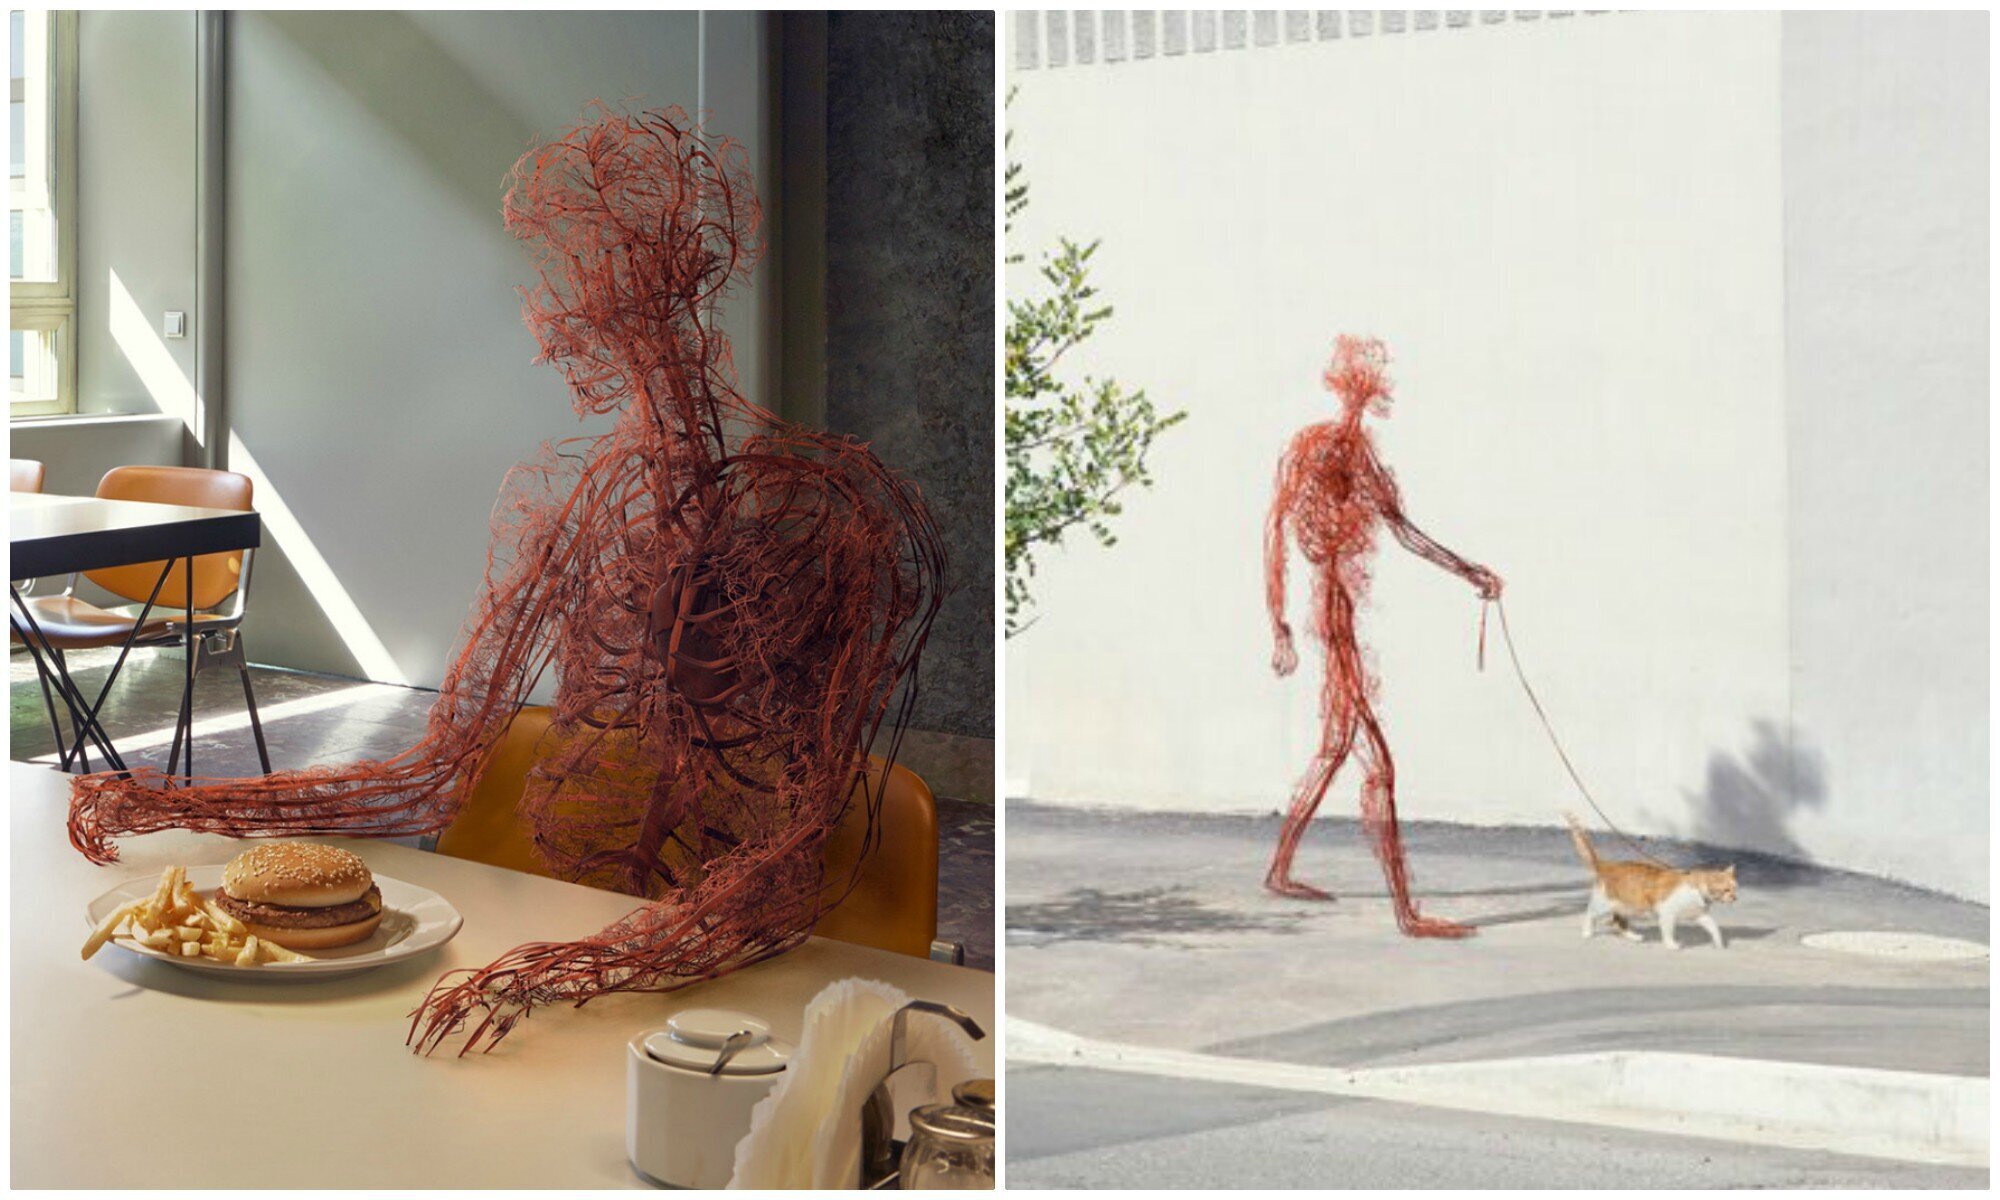 "Человек, несмотря ни на что": проект о жизни нашей кровеносной системы (8 фото + 1 гиф)